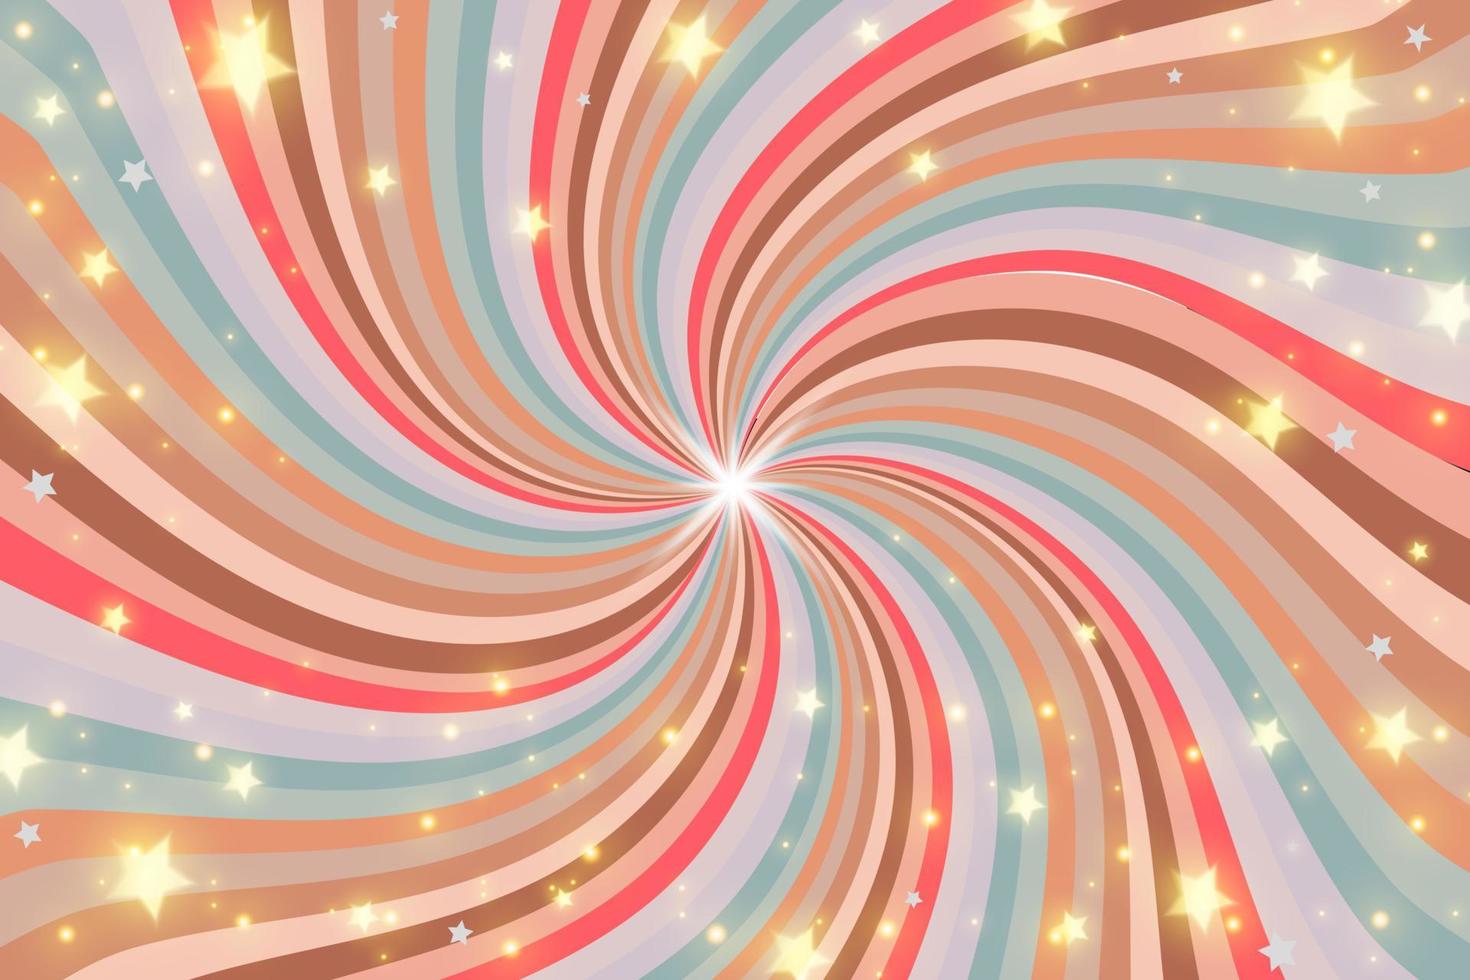 Regenbogenstrudelhintergrund mit Sternen und Scheinen. radialer pastellverlauf der verdrehten spirale. Vektor-Illustration. vektor